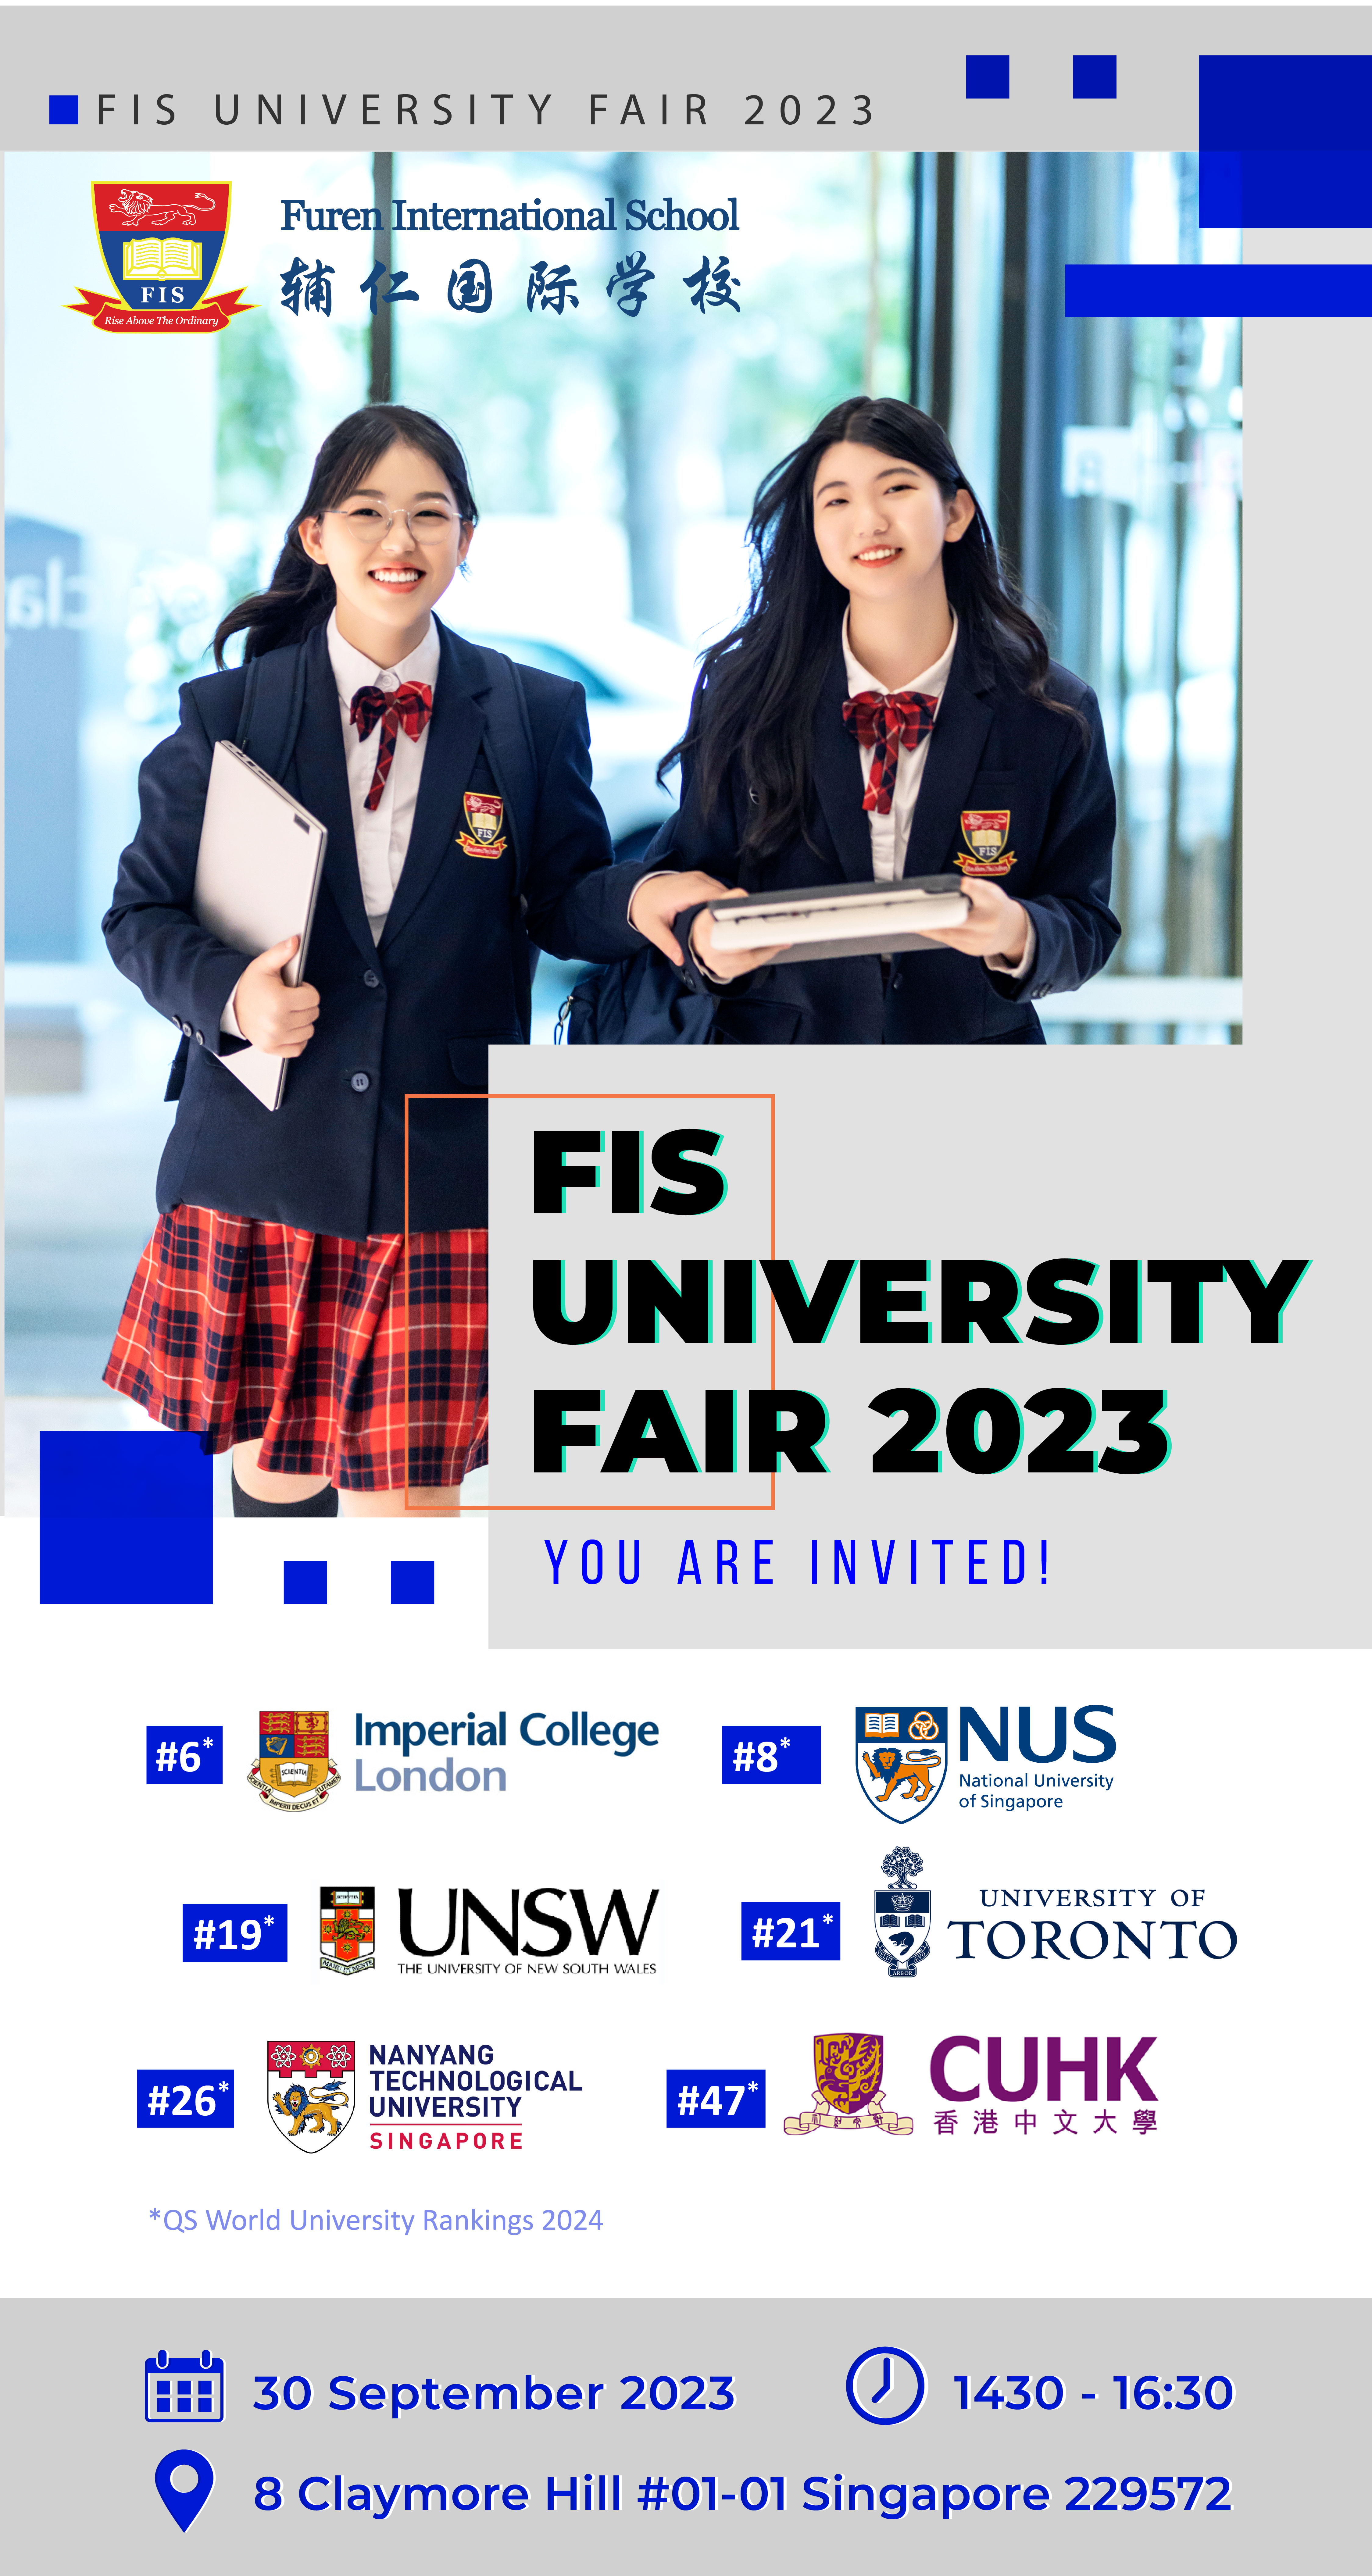 FIS University Fair 2023